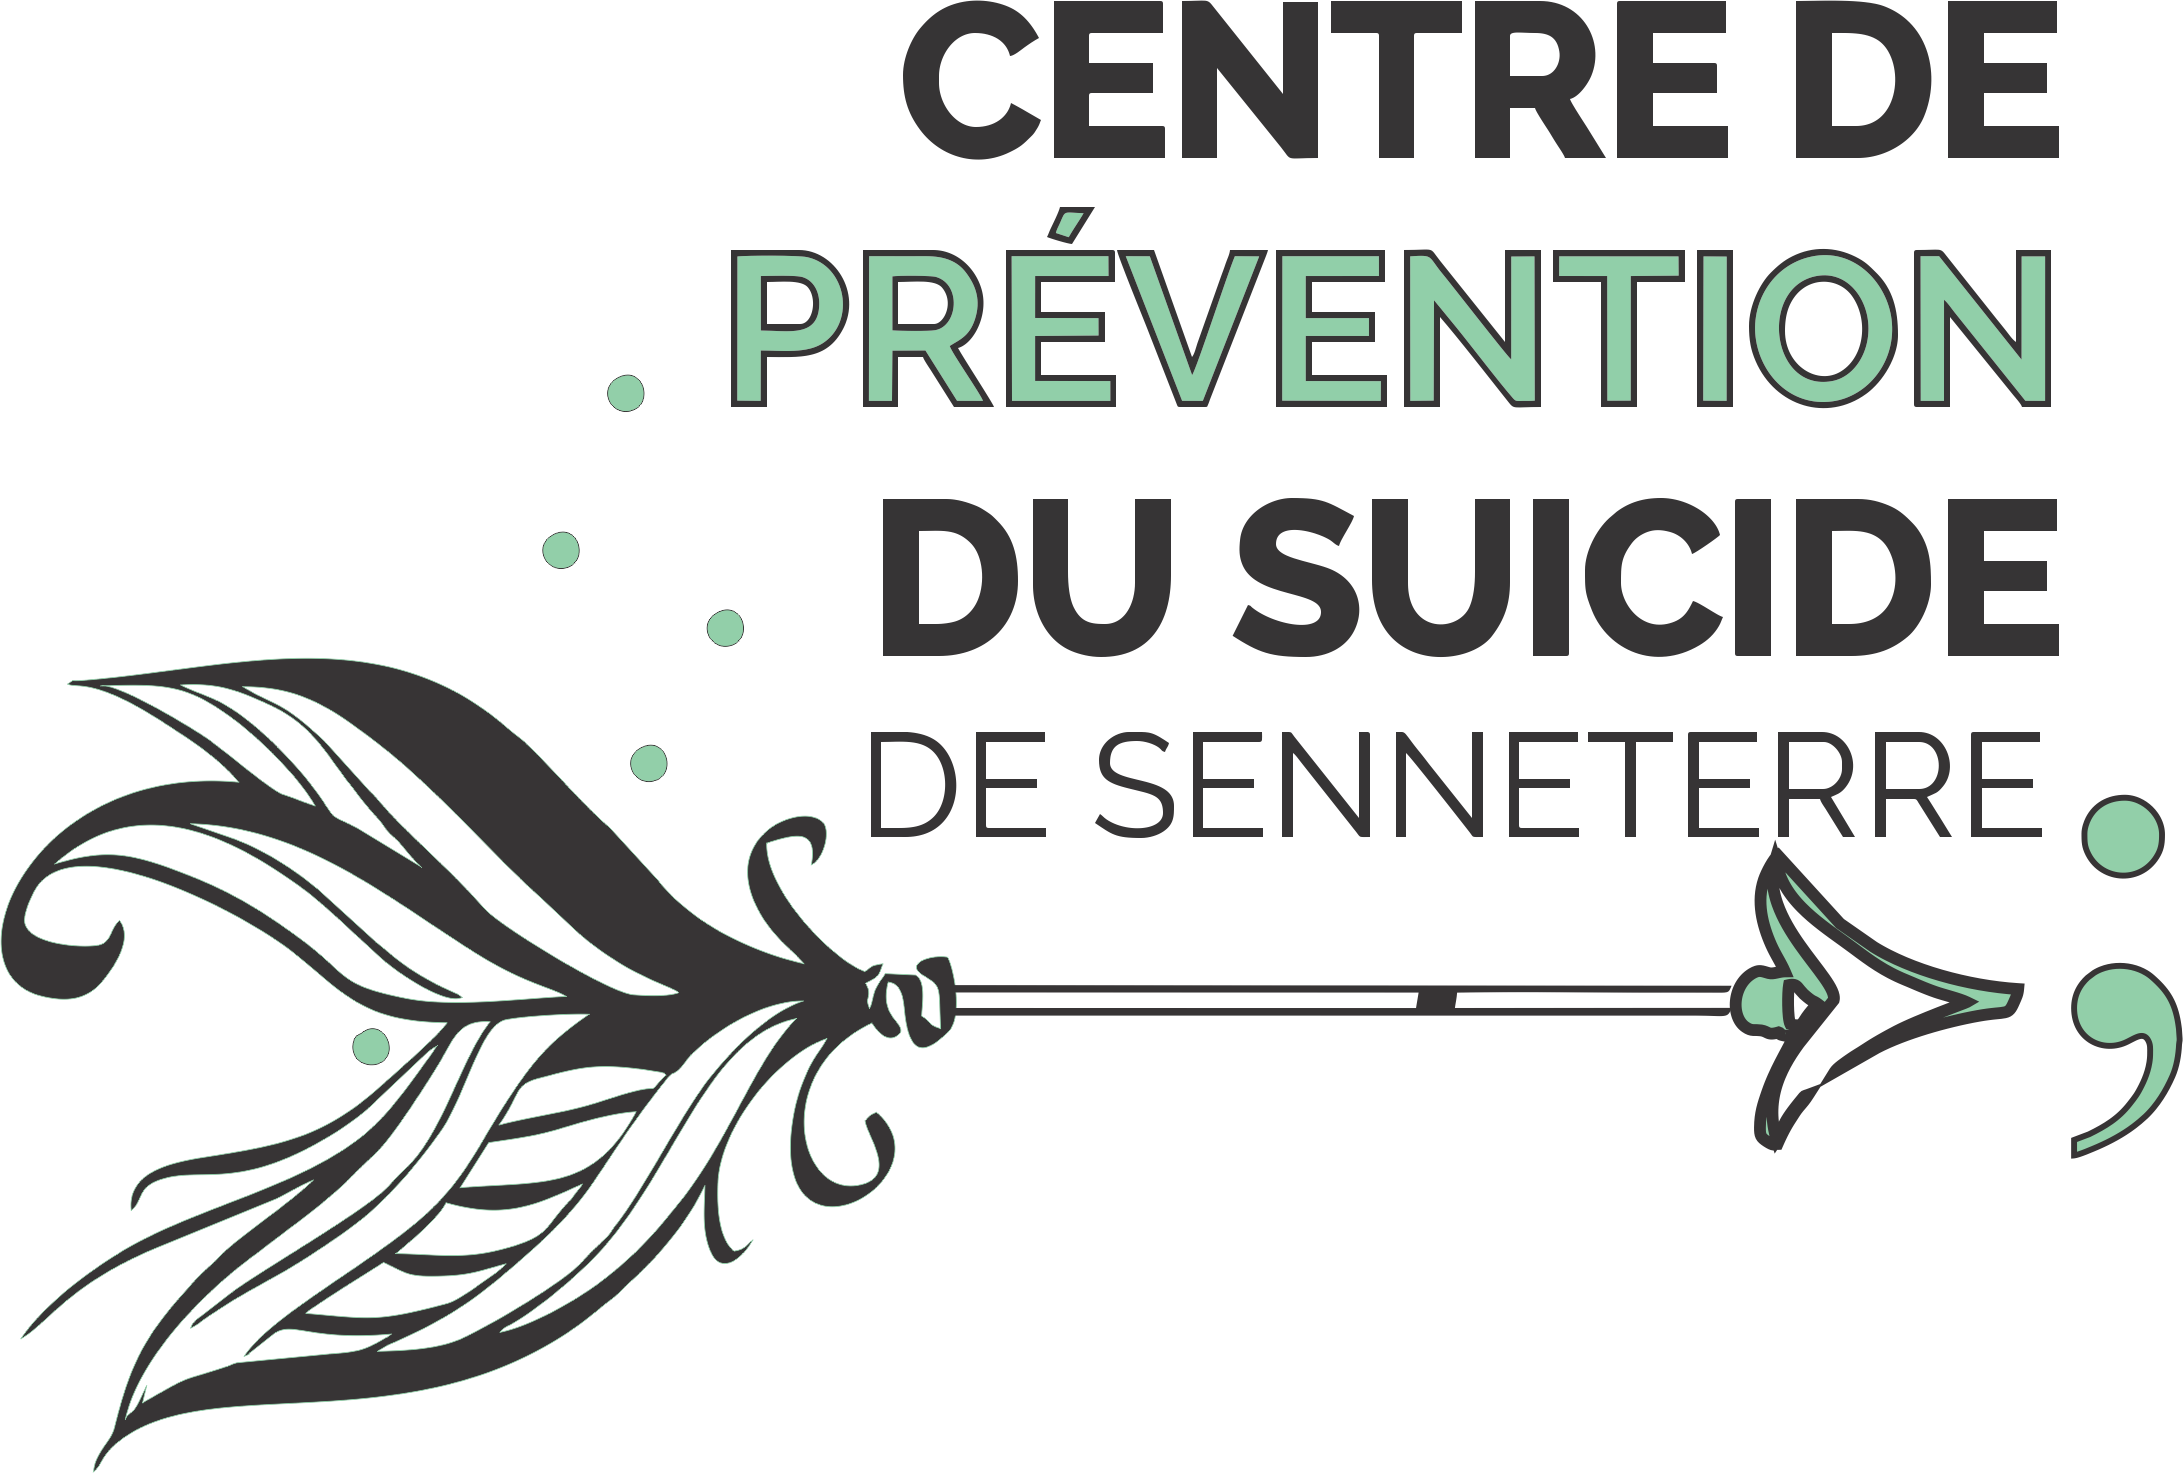 Centre de Prévention du Suicide de Senneterre logo